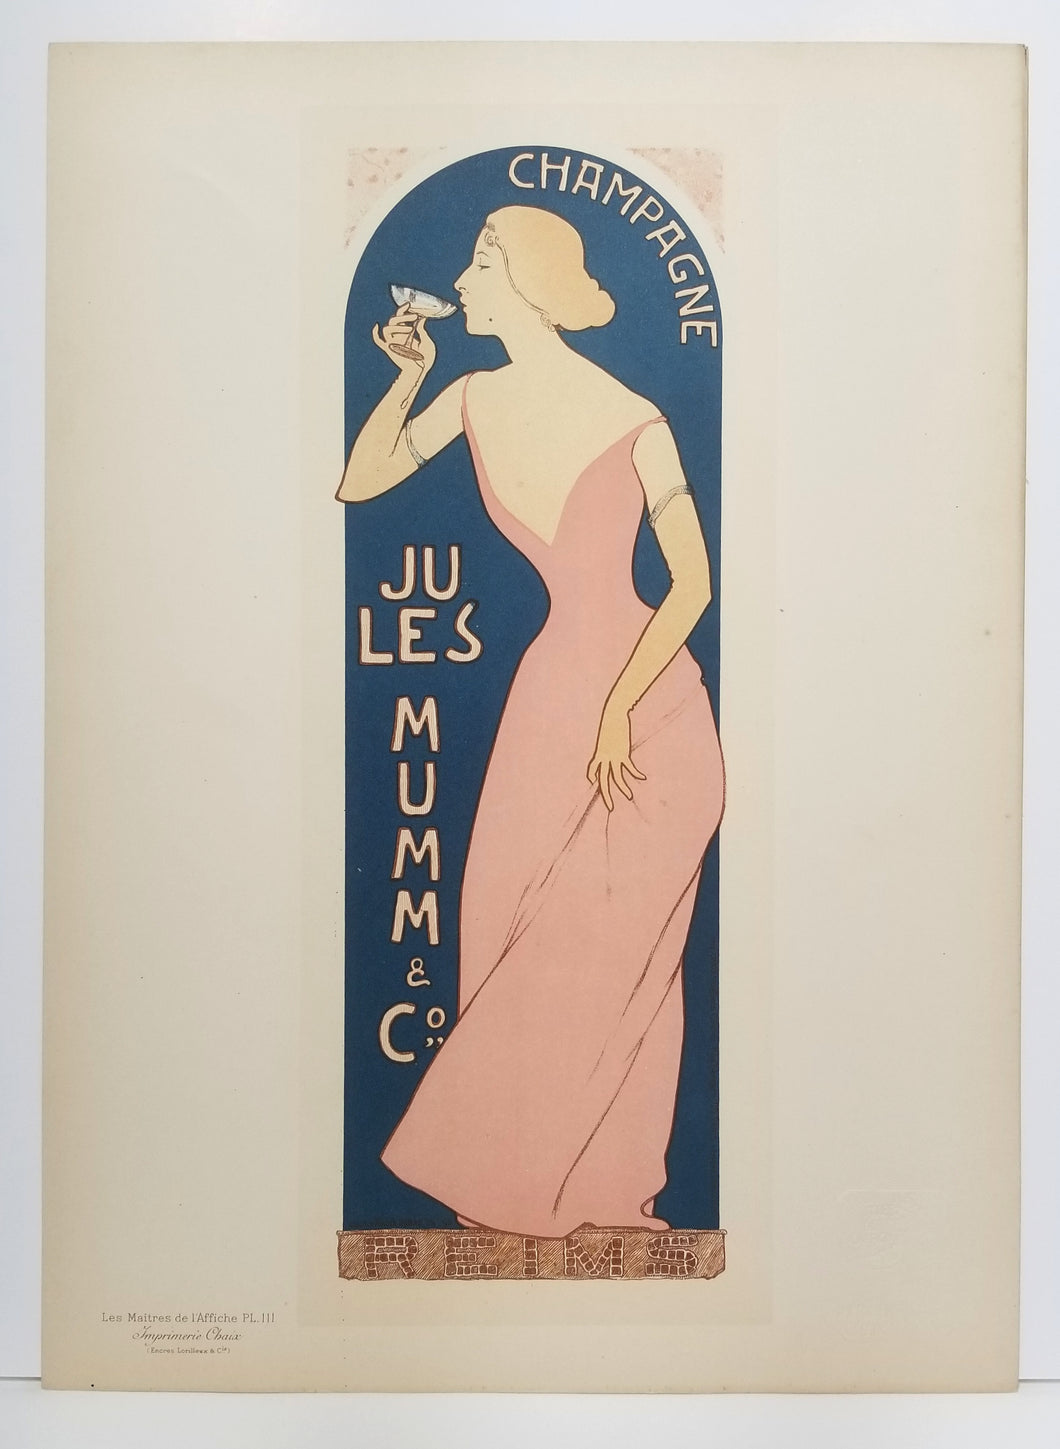 Champagne Jules Mumm. 1895-1898.